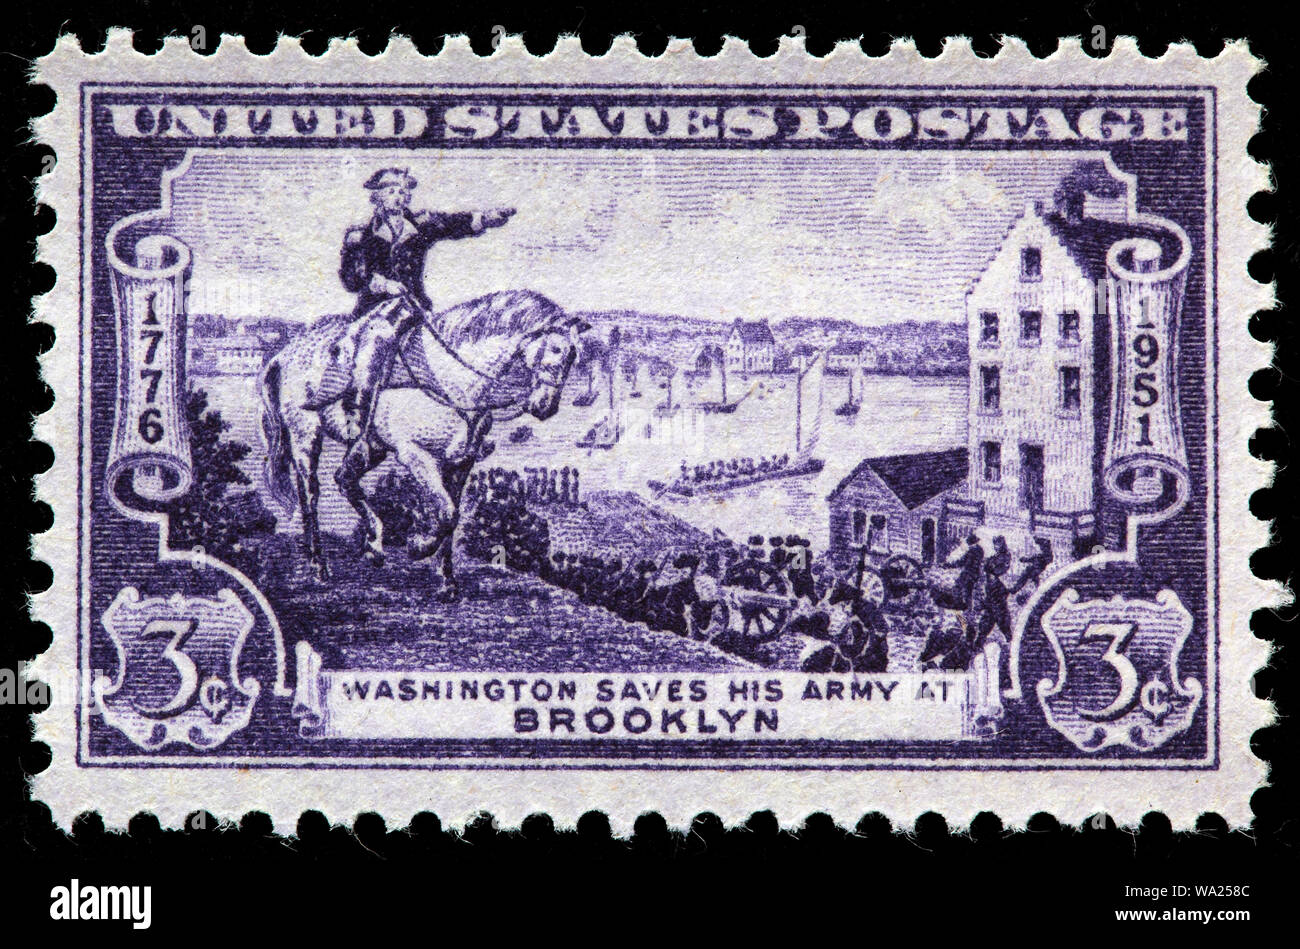 Le général George Washington sauve son armée à Brooklyn, timbre-poste, USA, 1951 Banque D'Images